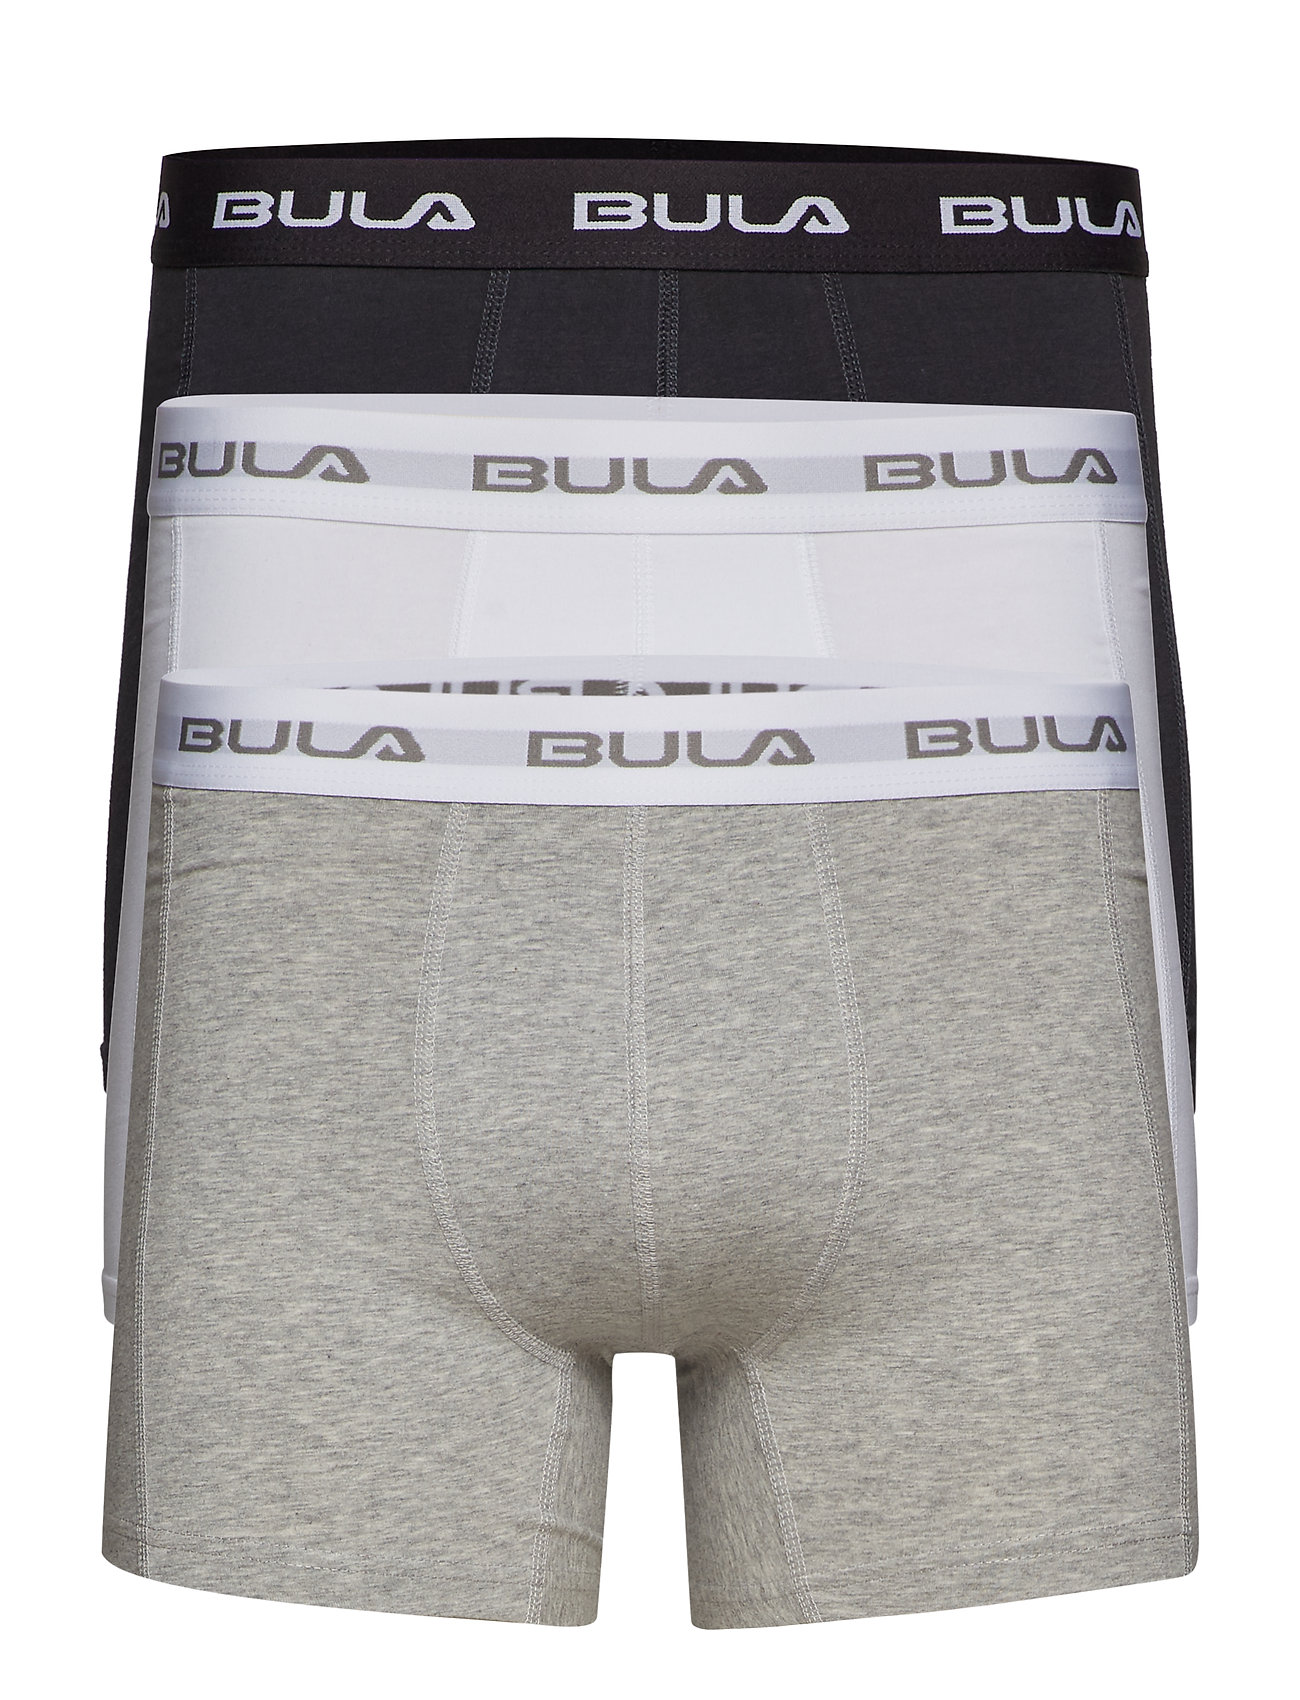 bula underwear